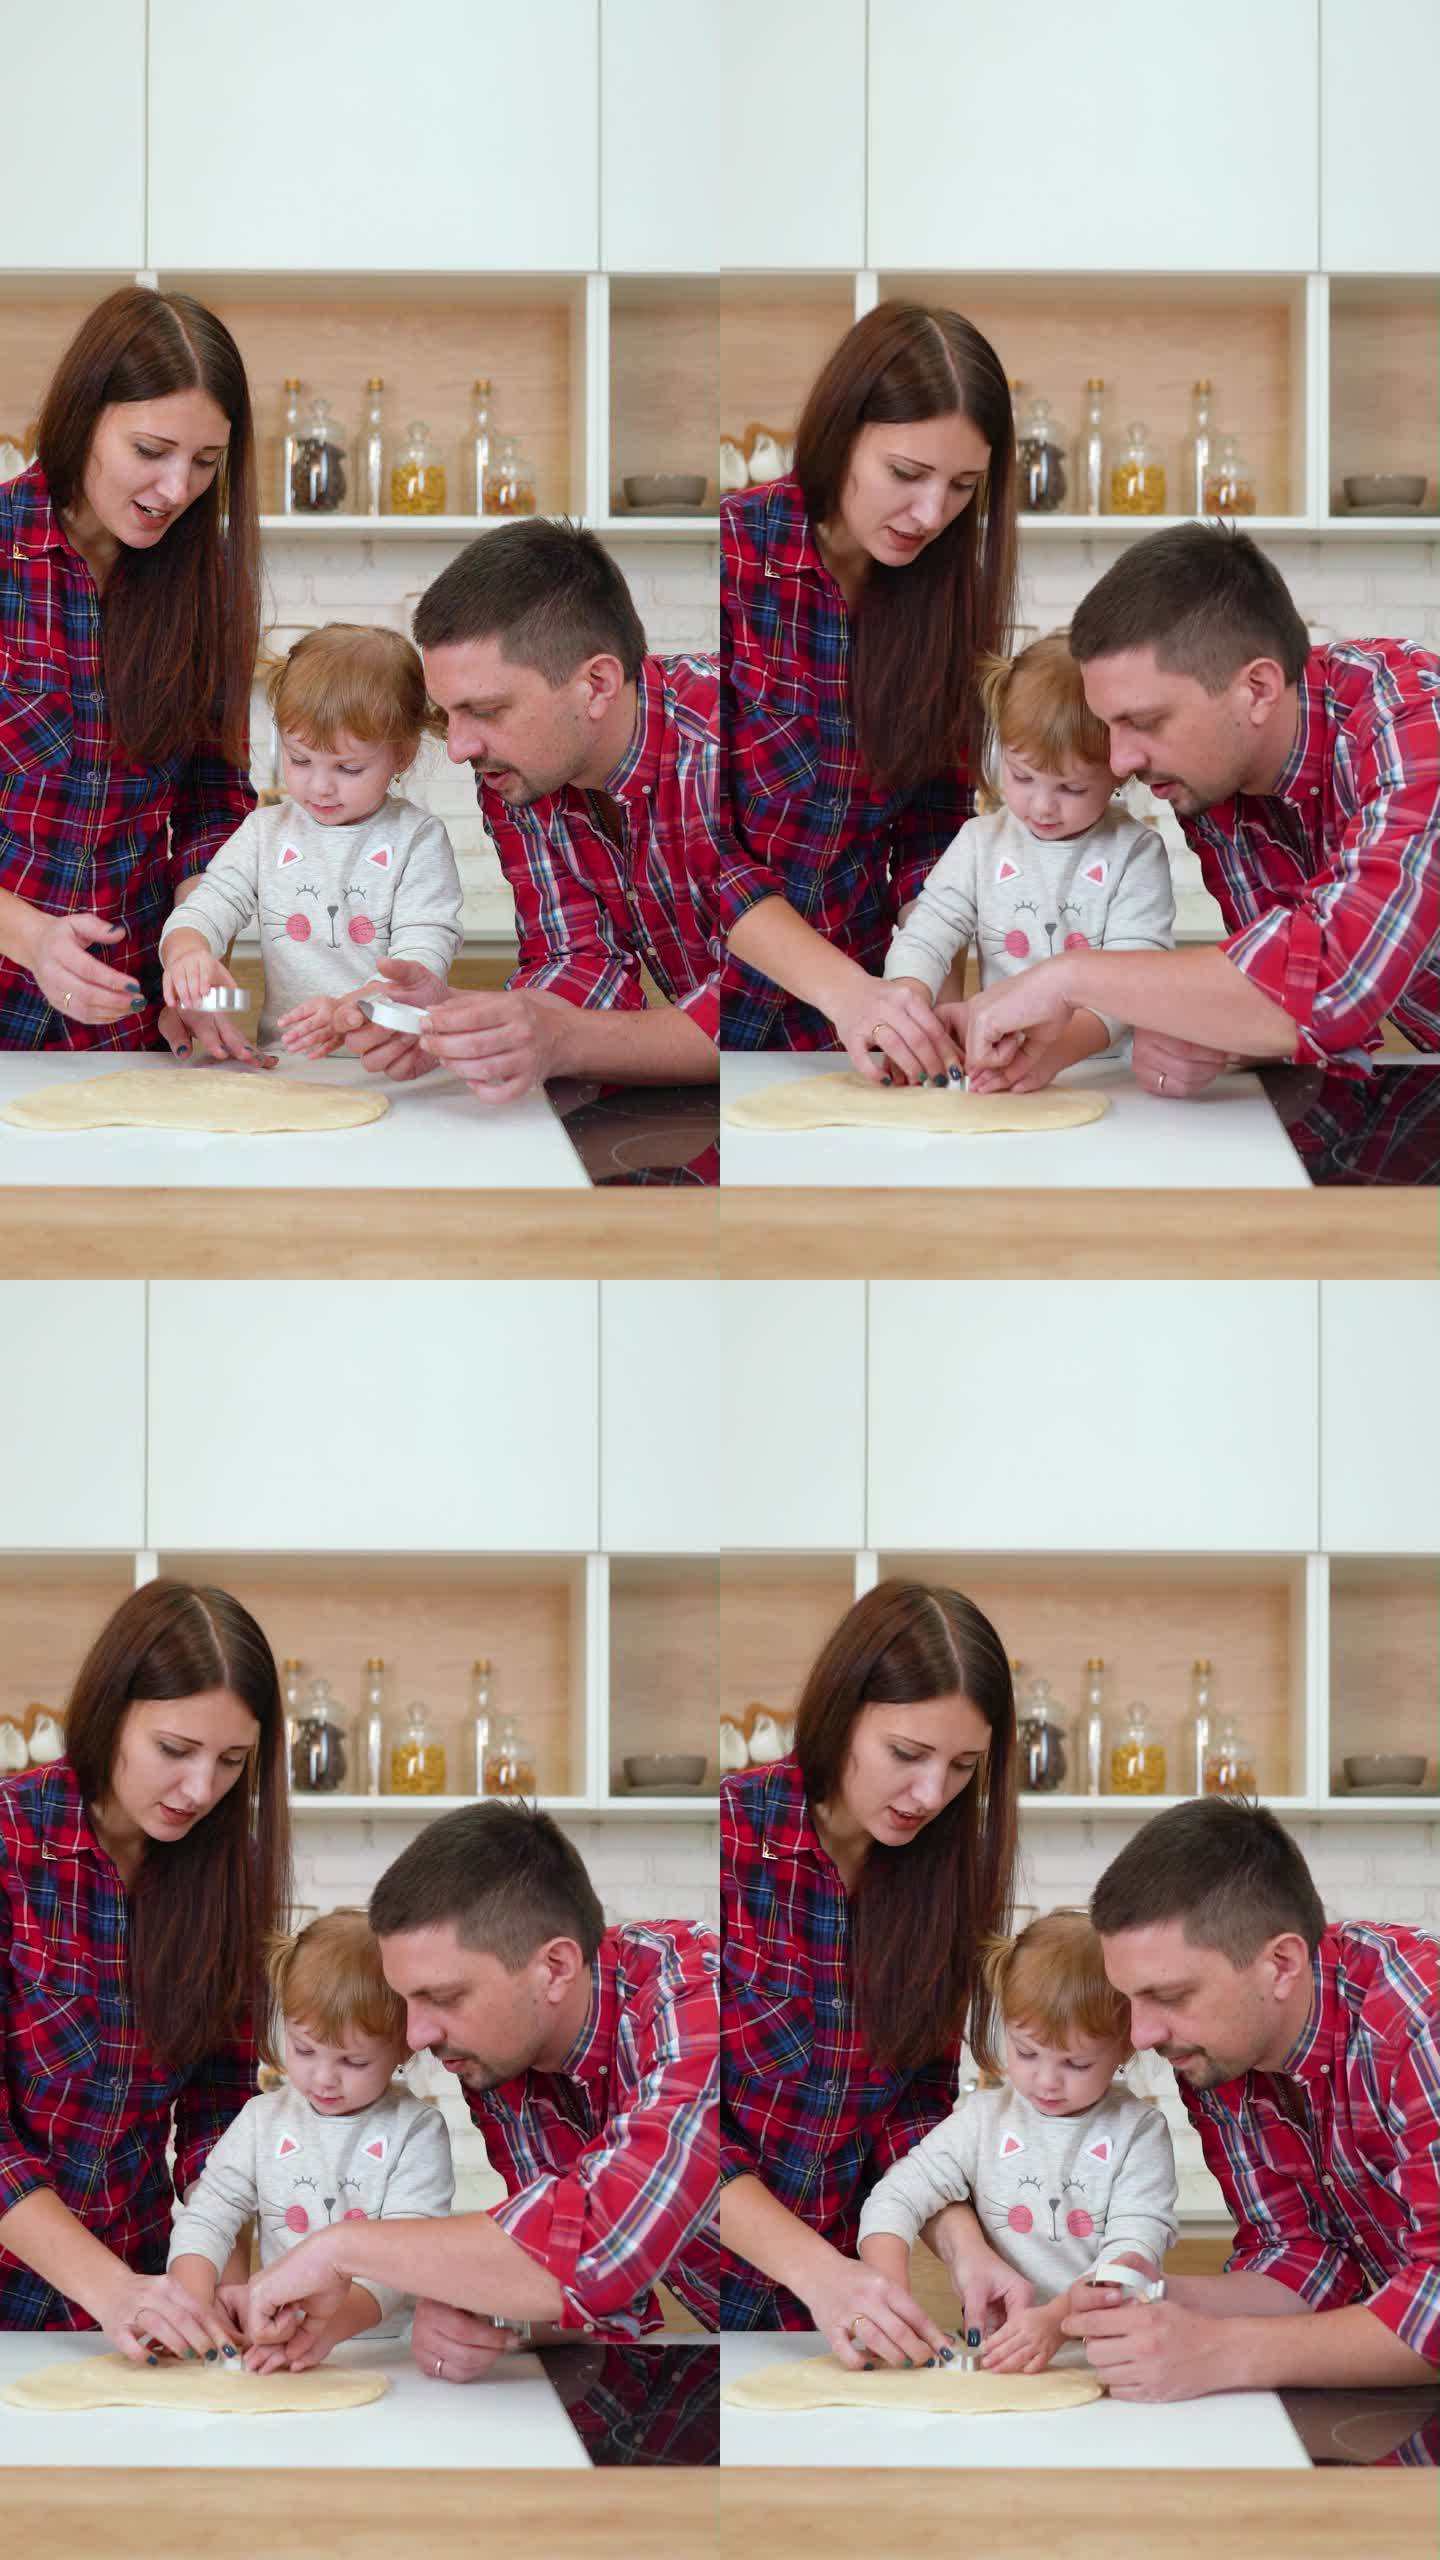 竖屏:小女孩和她的父母在切饼干